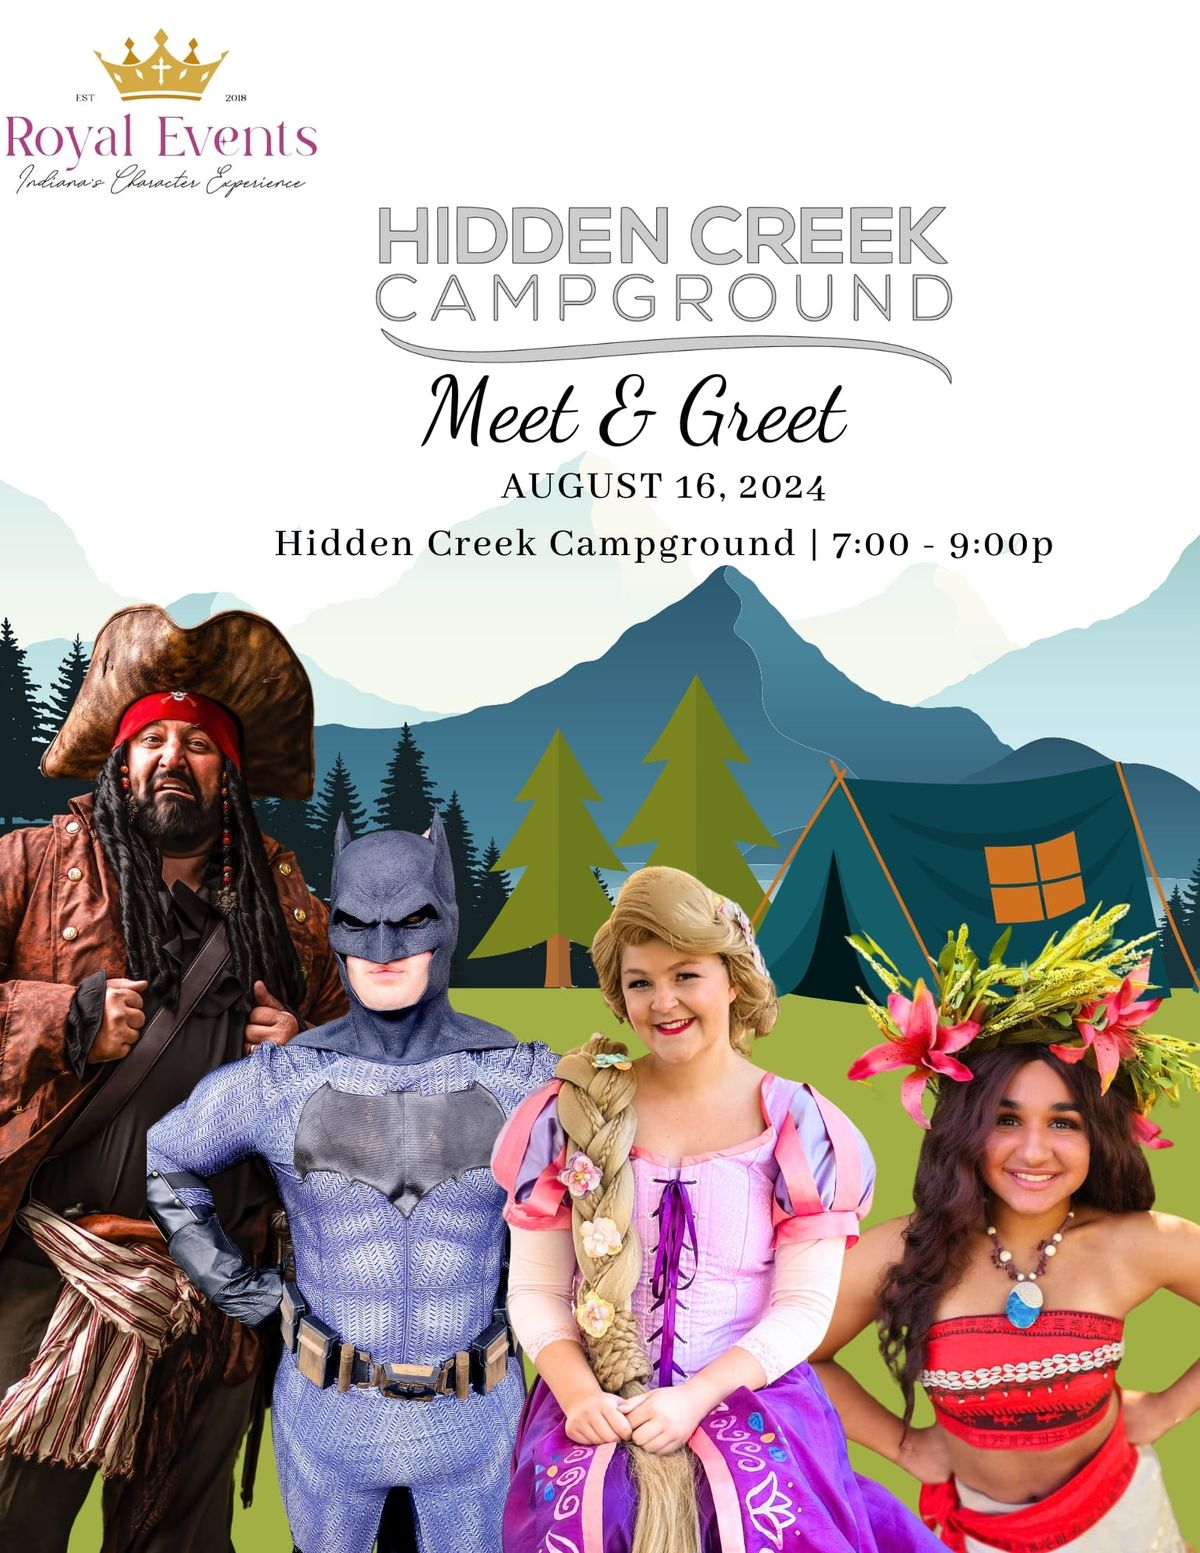 Campground: Meet & Greet